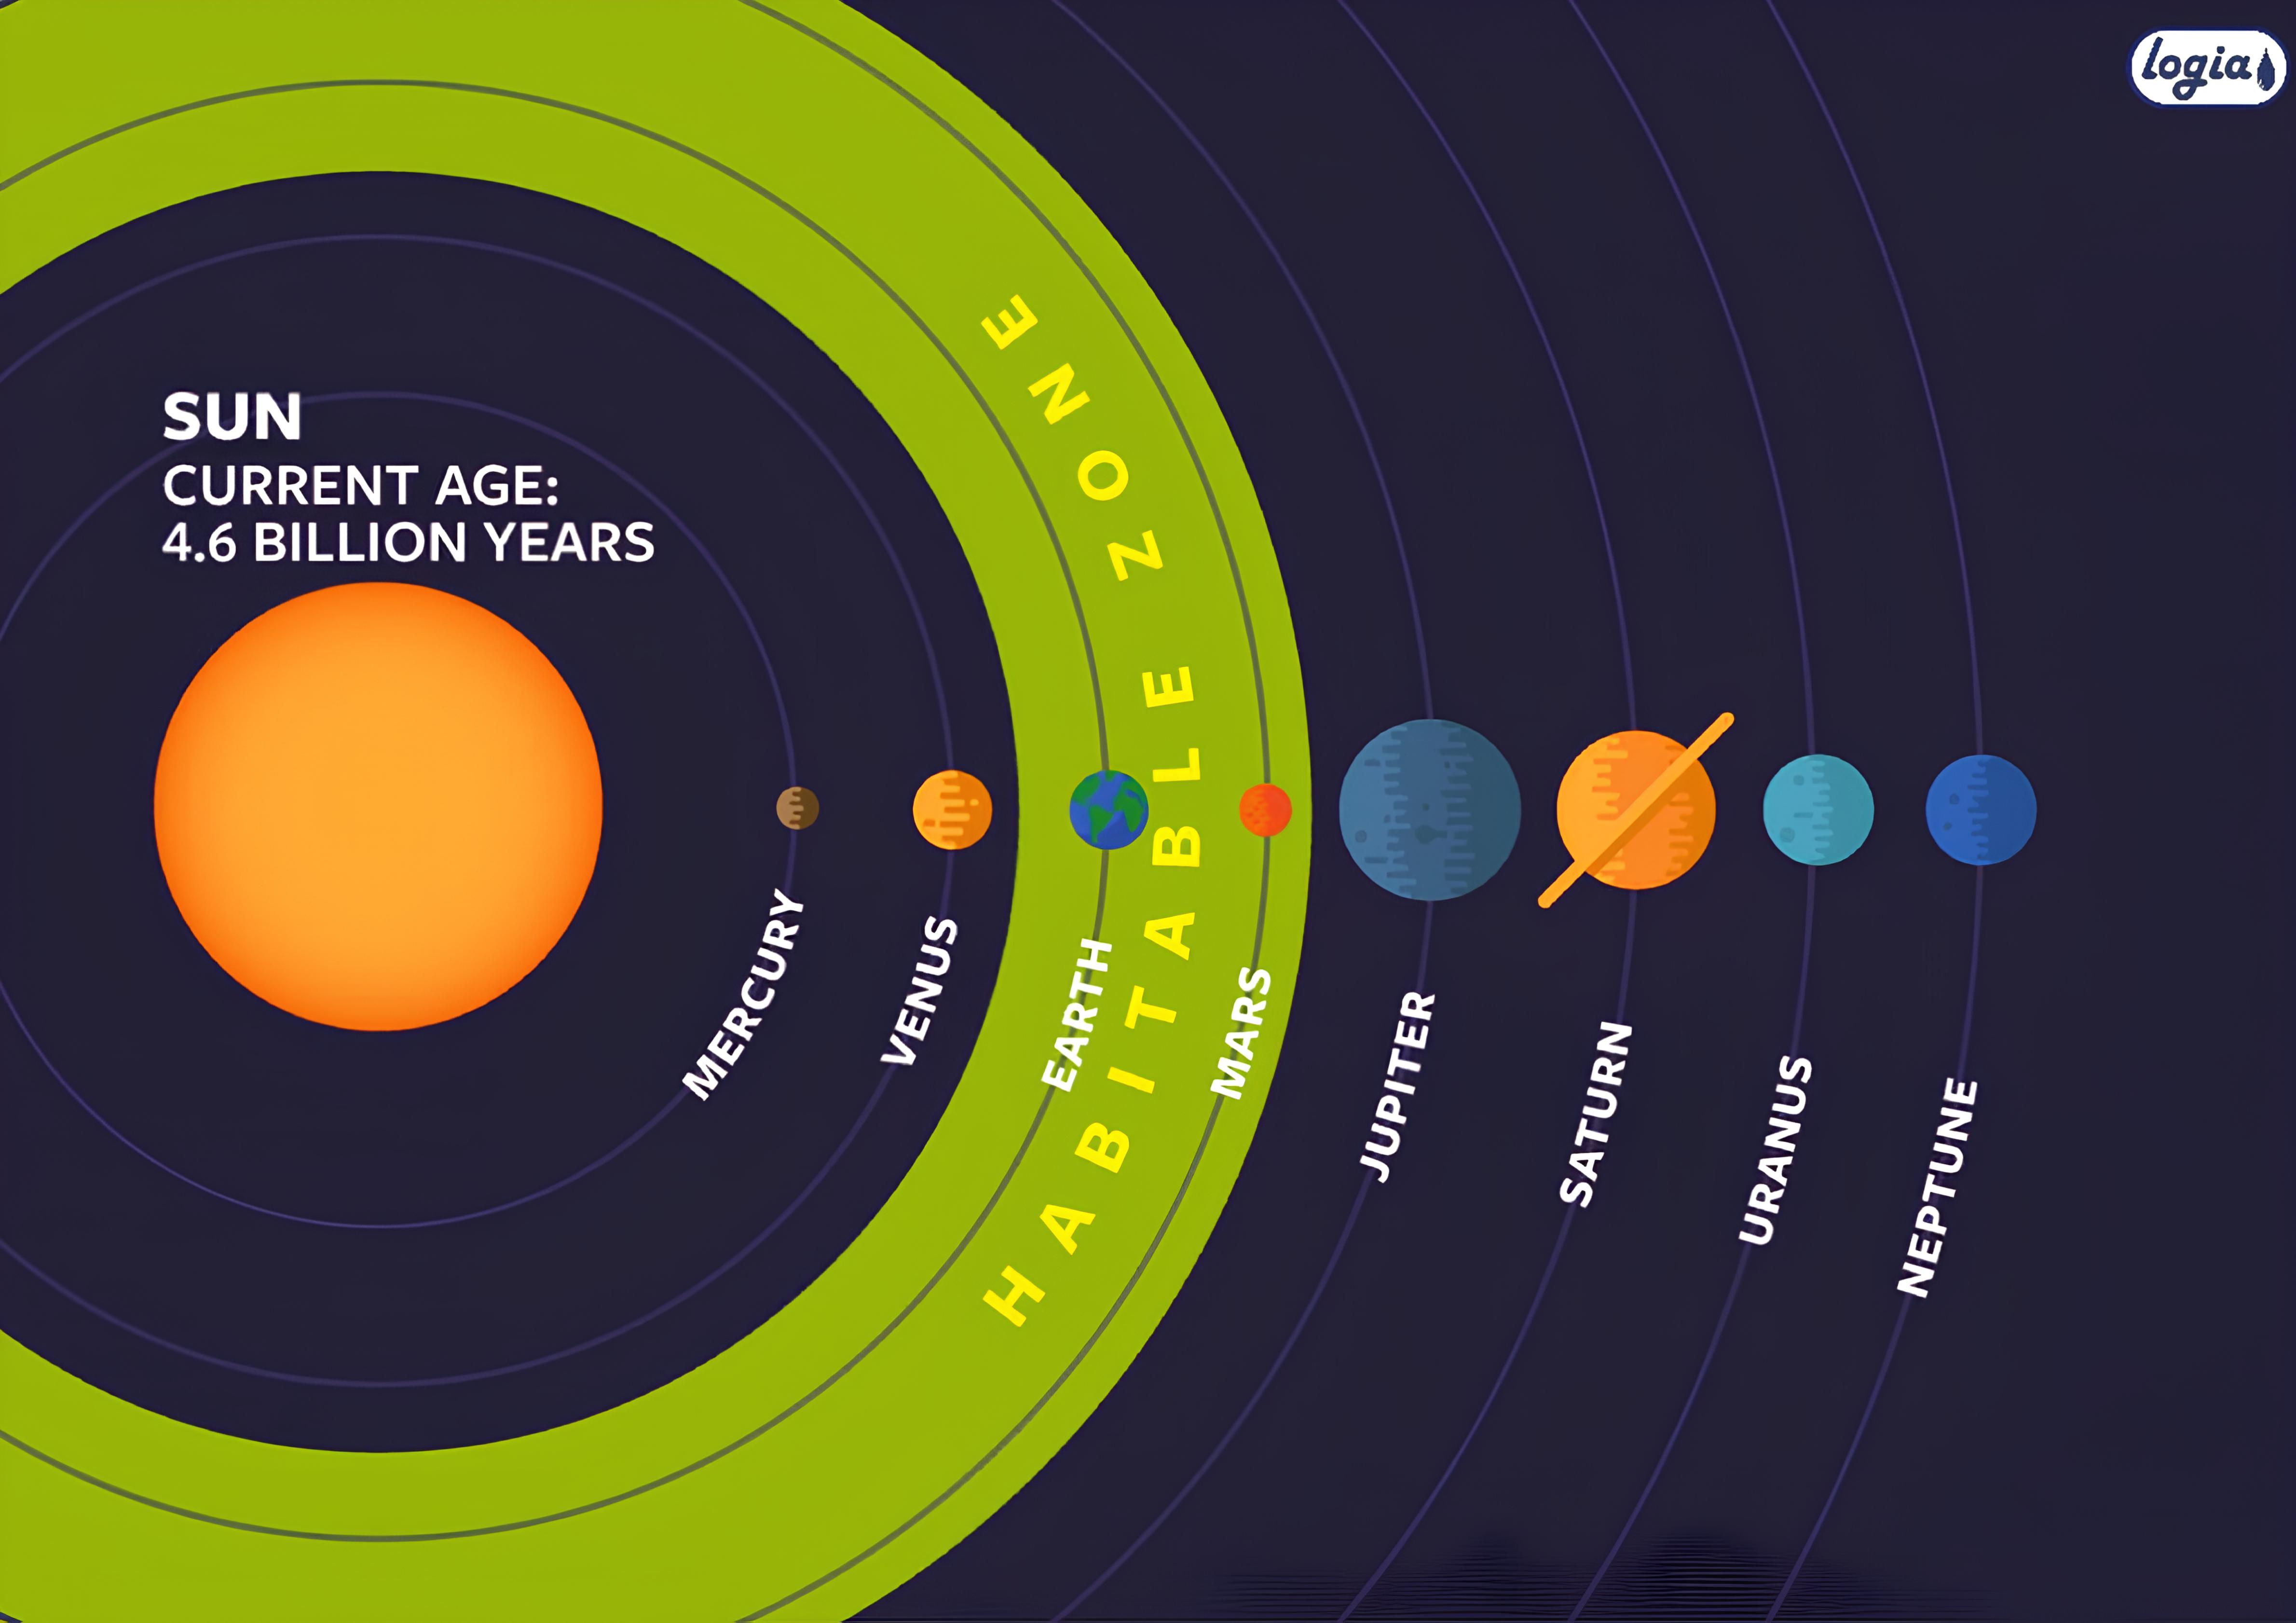 Этапы жизни планеты. Зона обитаемости солнечной системы. Зона обитаемости солнечной системы вокруг нашего солнца. Зона Златовласки в солнечной системе. Зона обитаемости экзопланет.